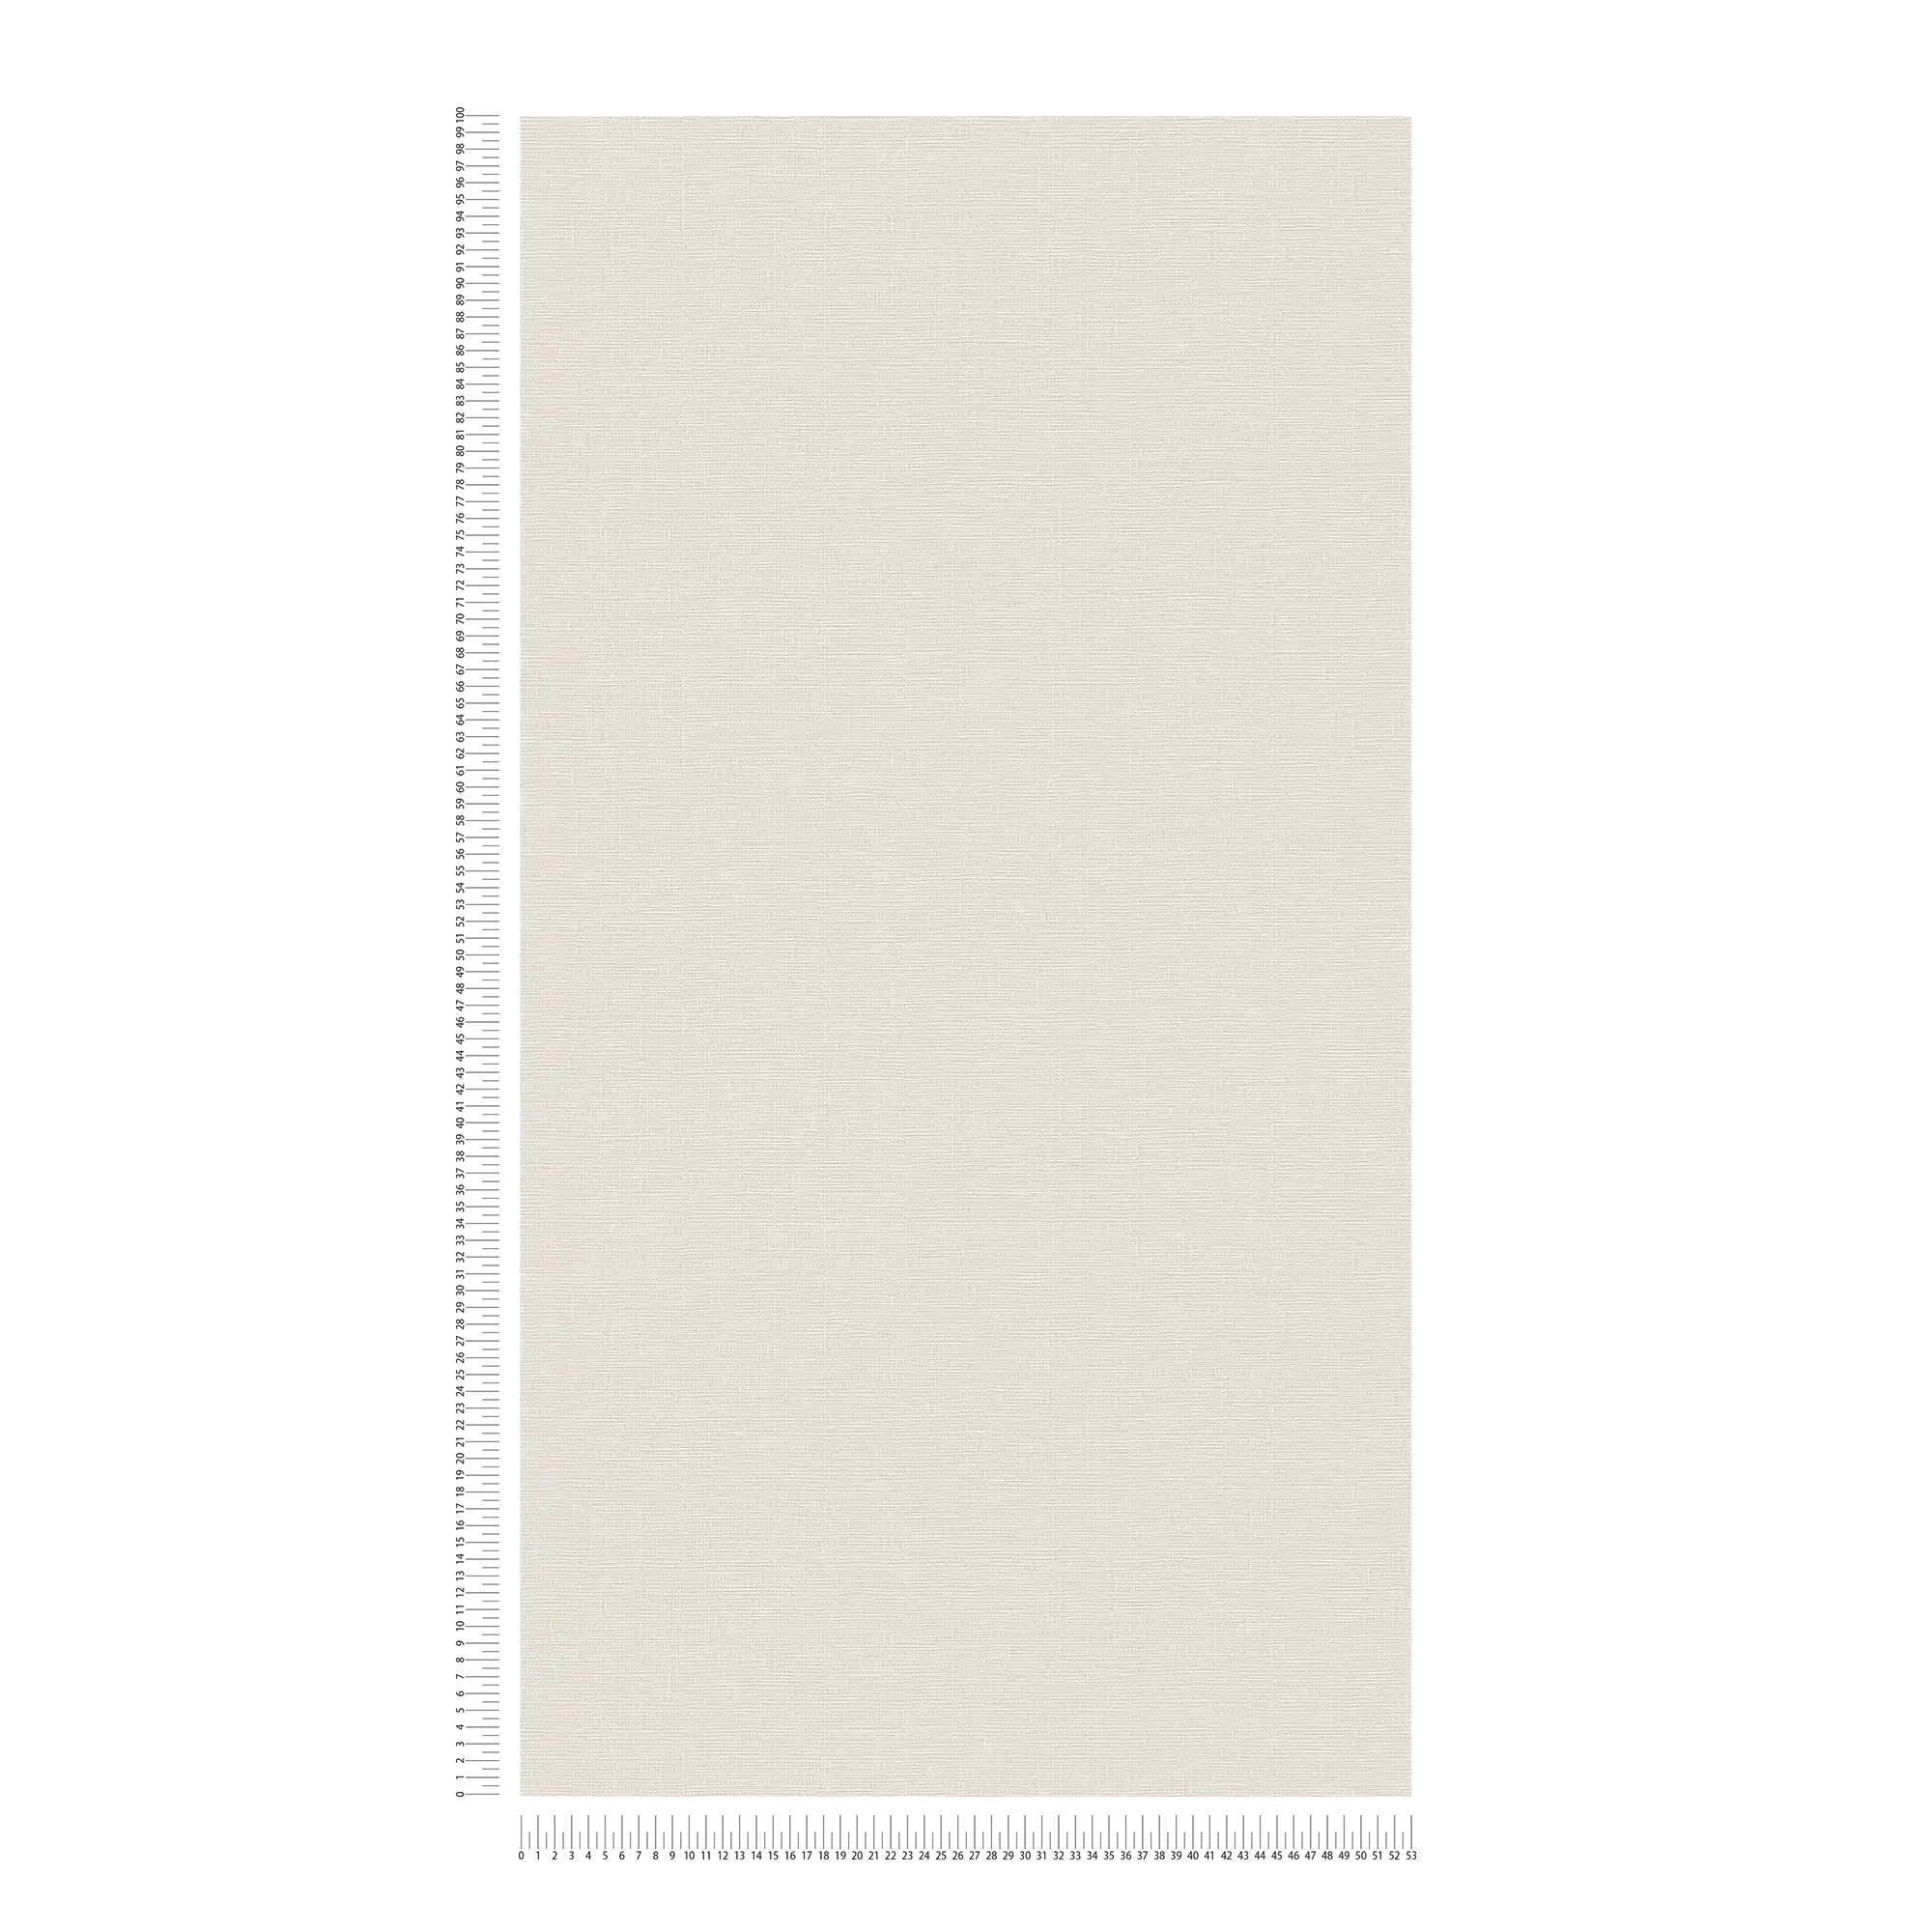             Carta da parati in tessuto non tessuto liscio con struttura in lino - Crema
        